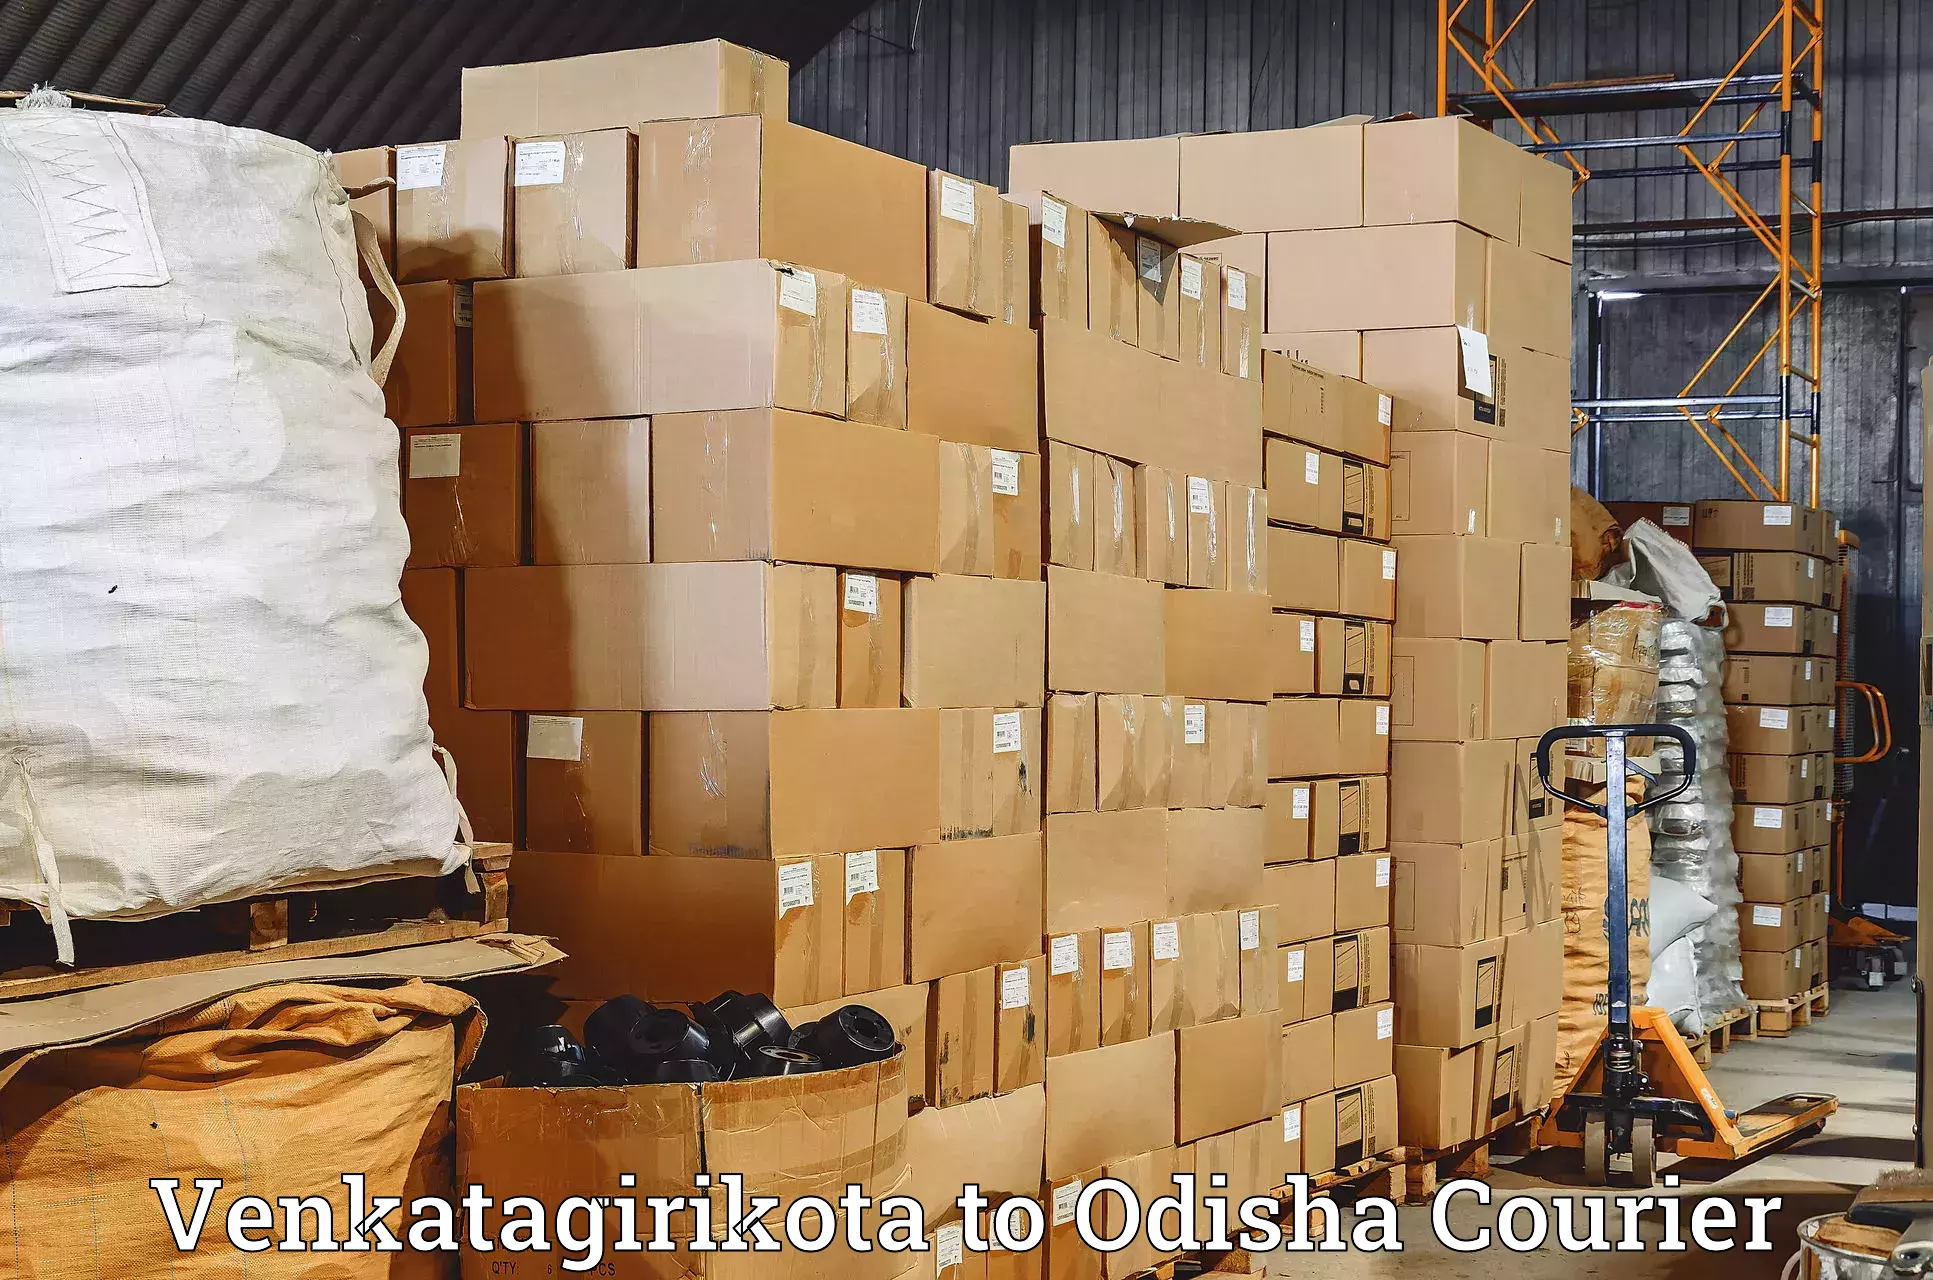 Nationwide shipping services Venkatagirikota to Rairakhol